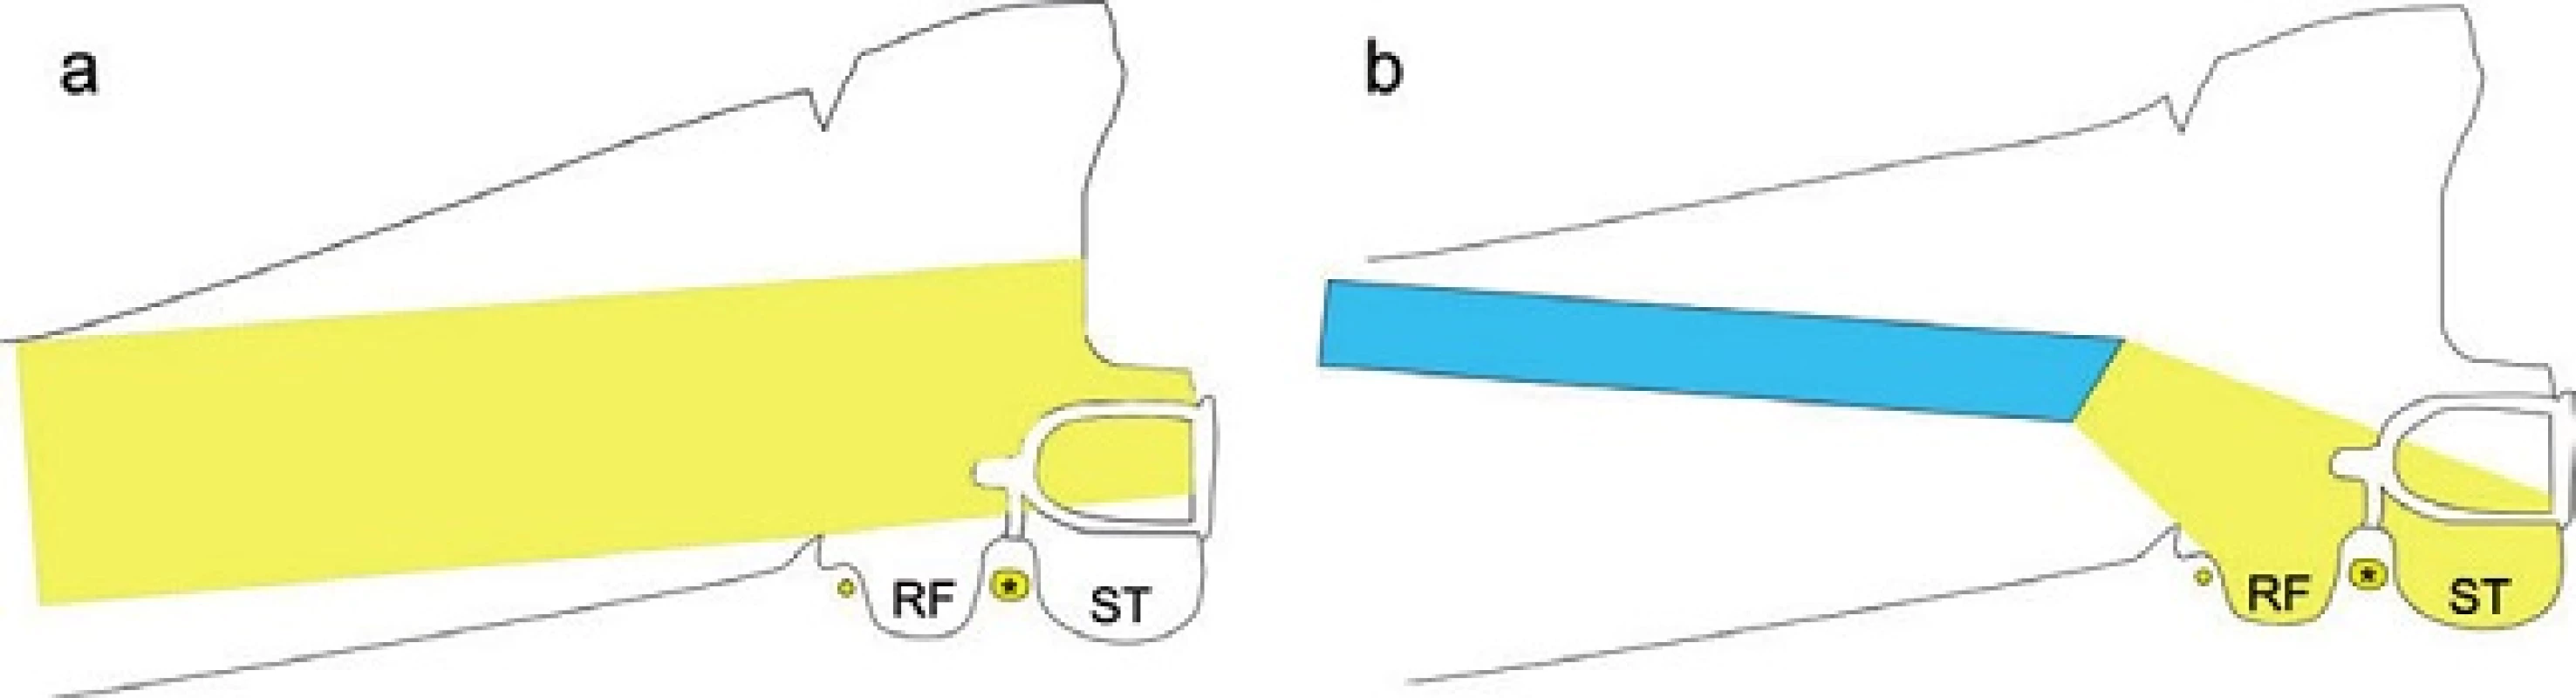 Přehlednost oblasti třmínku při použití mikroskopu (vlevo) a při použití 30stupňového endoskopu (vpravo). RF - recessus facialis, ST - sinus tympani, * tvářový nerv.